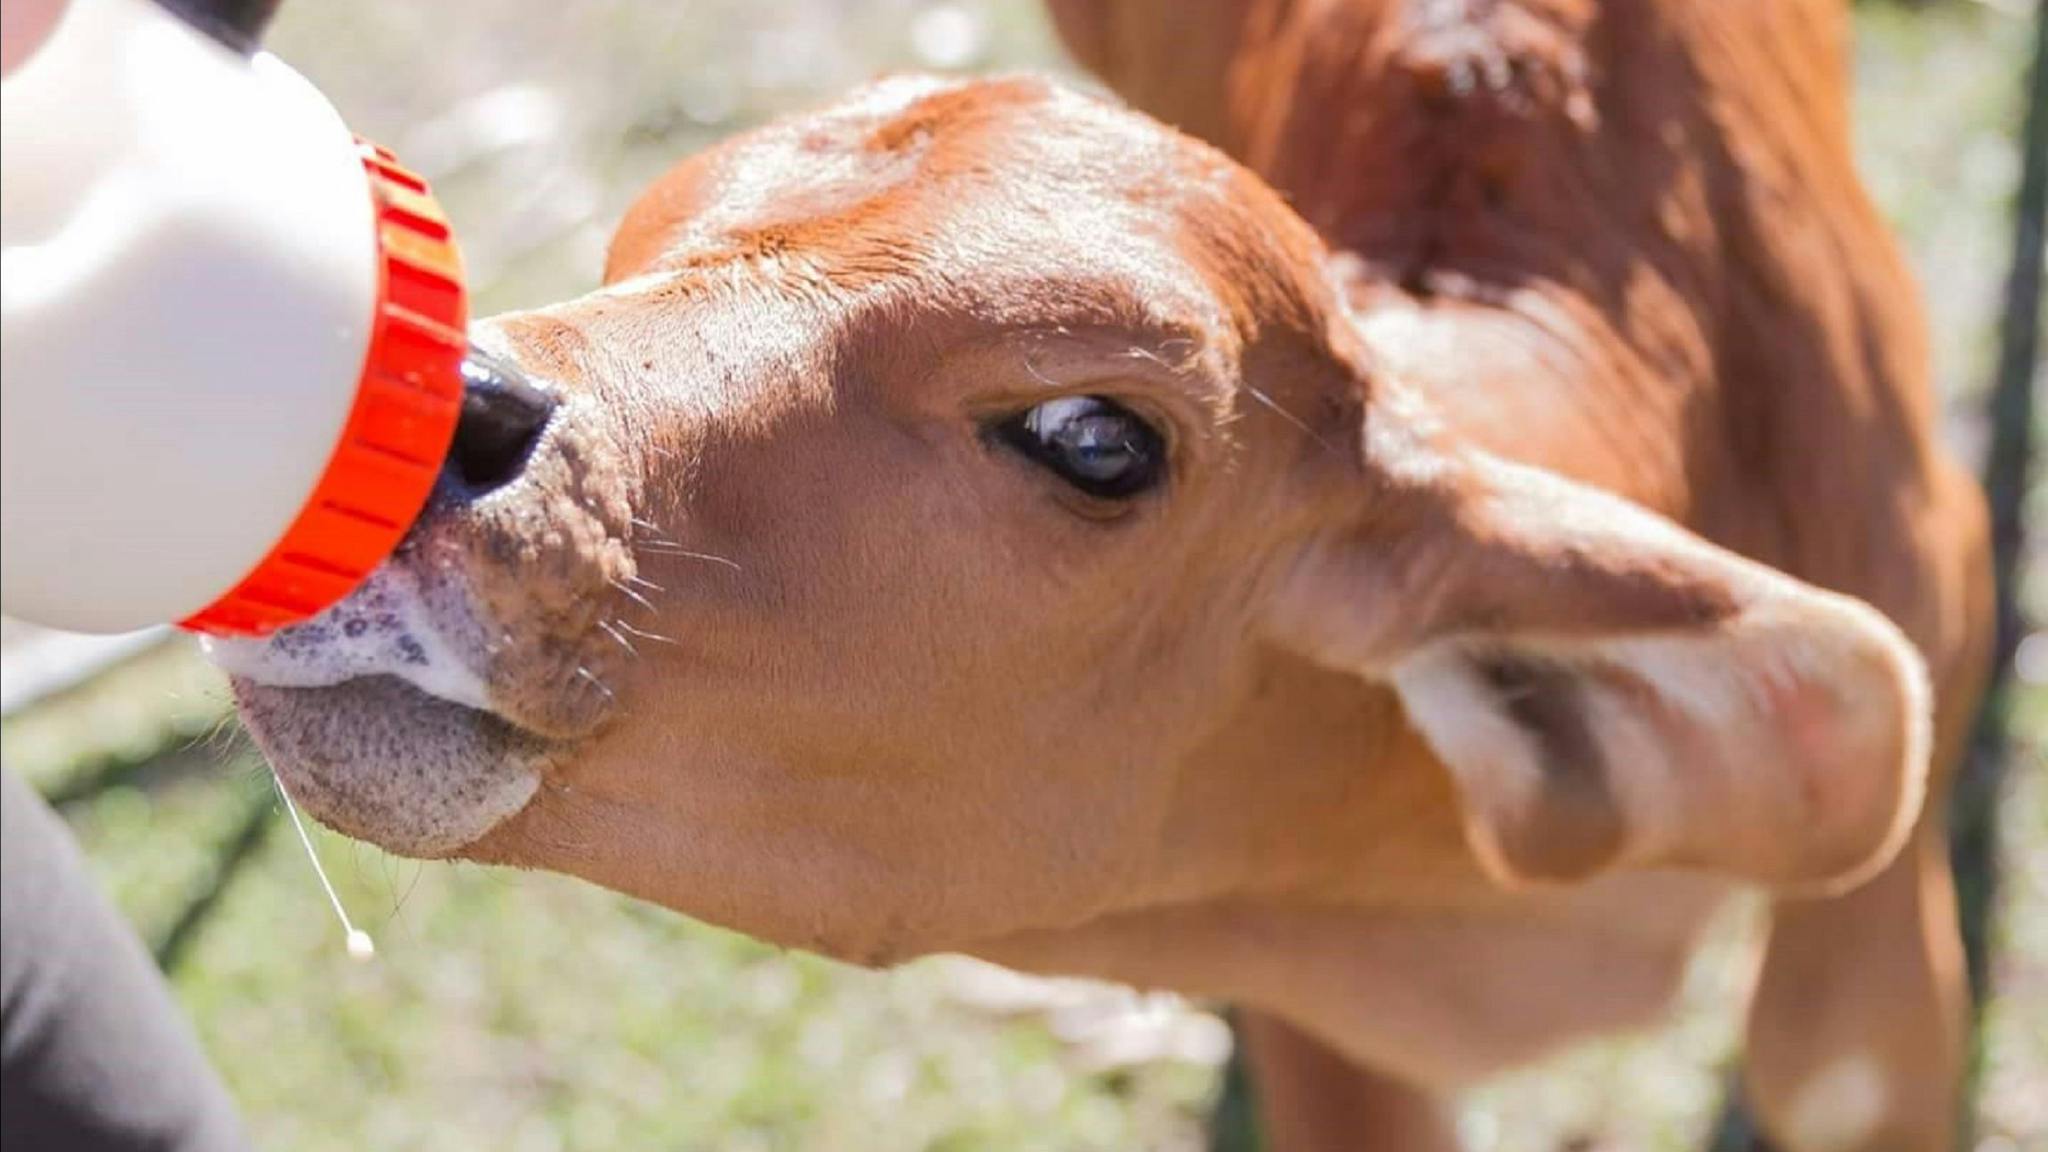 Cow drinking milk